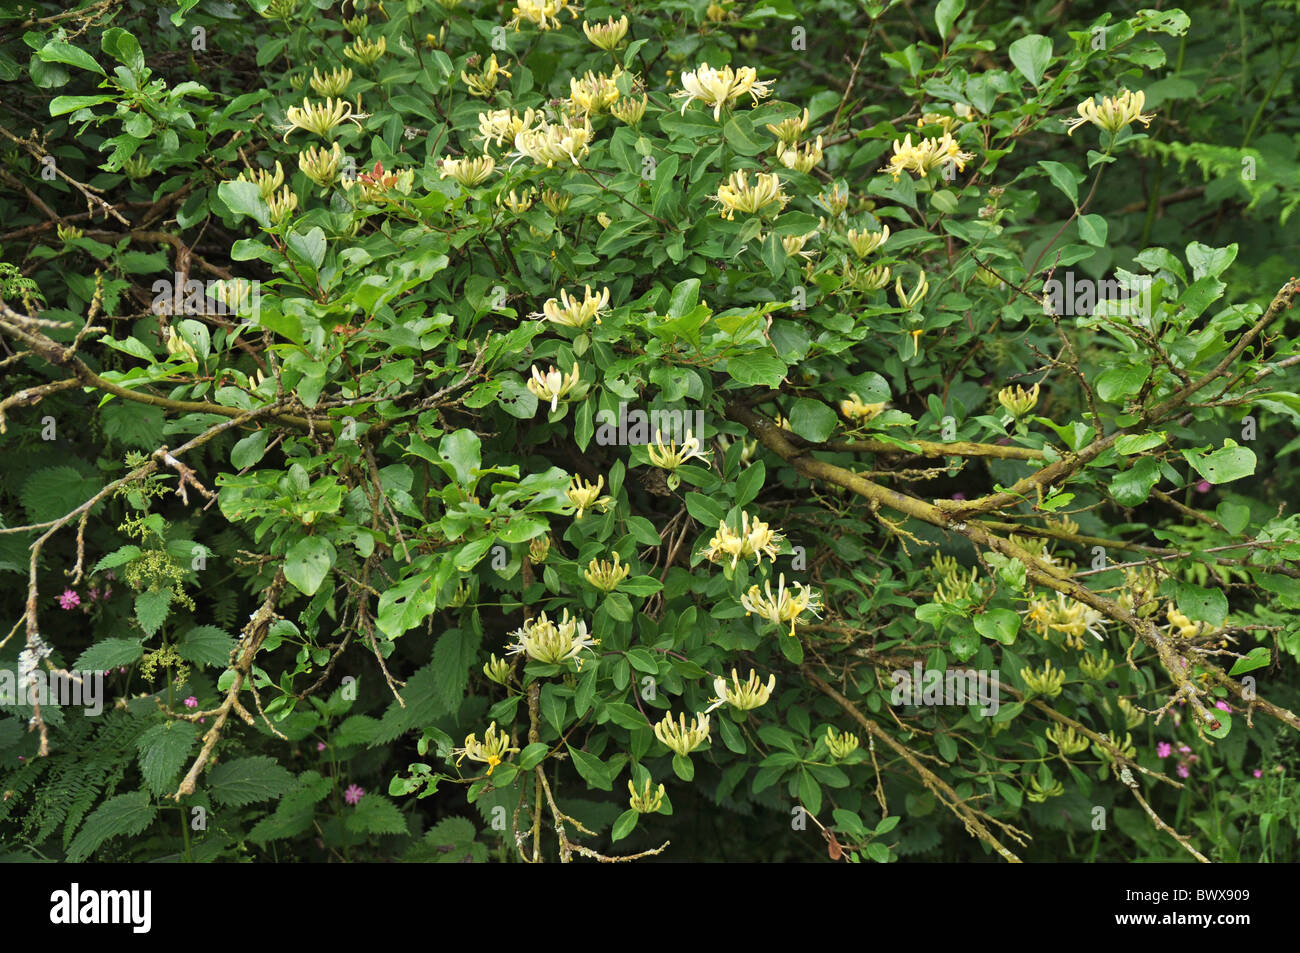 Wild Honeysuckle Lonicera periclymenum flowering Stock Photo